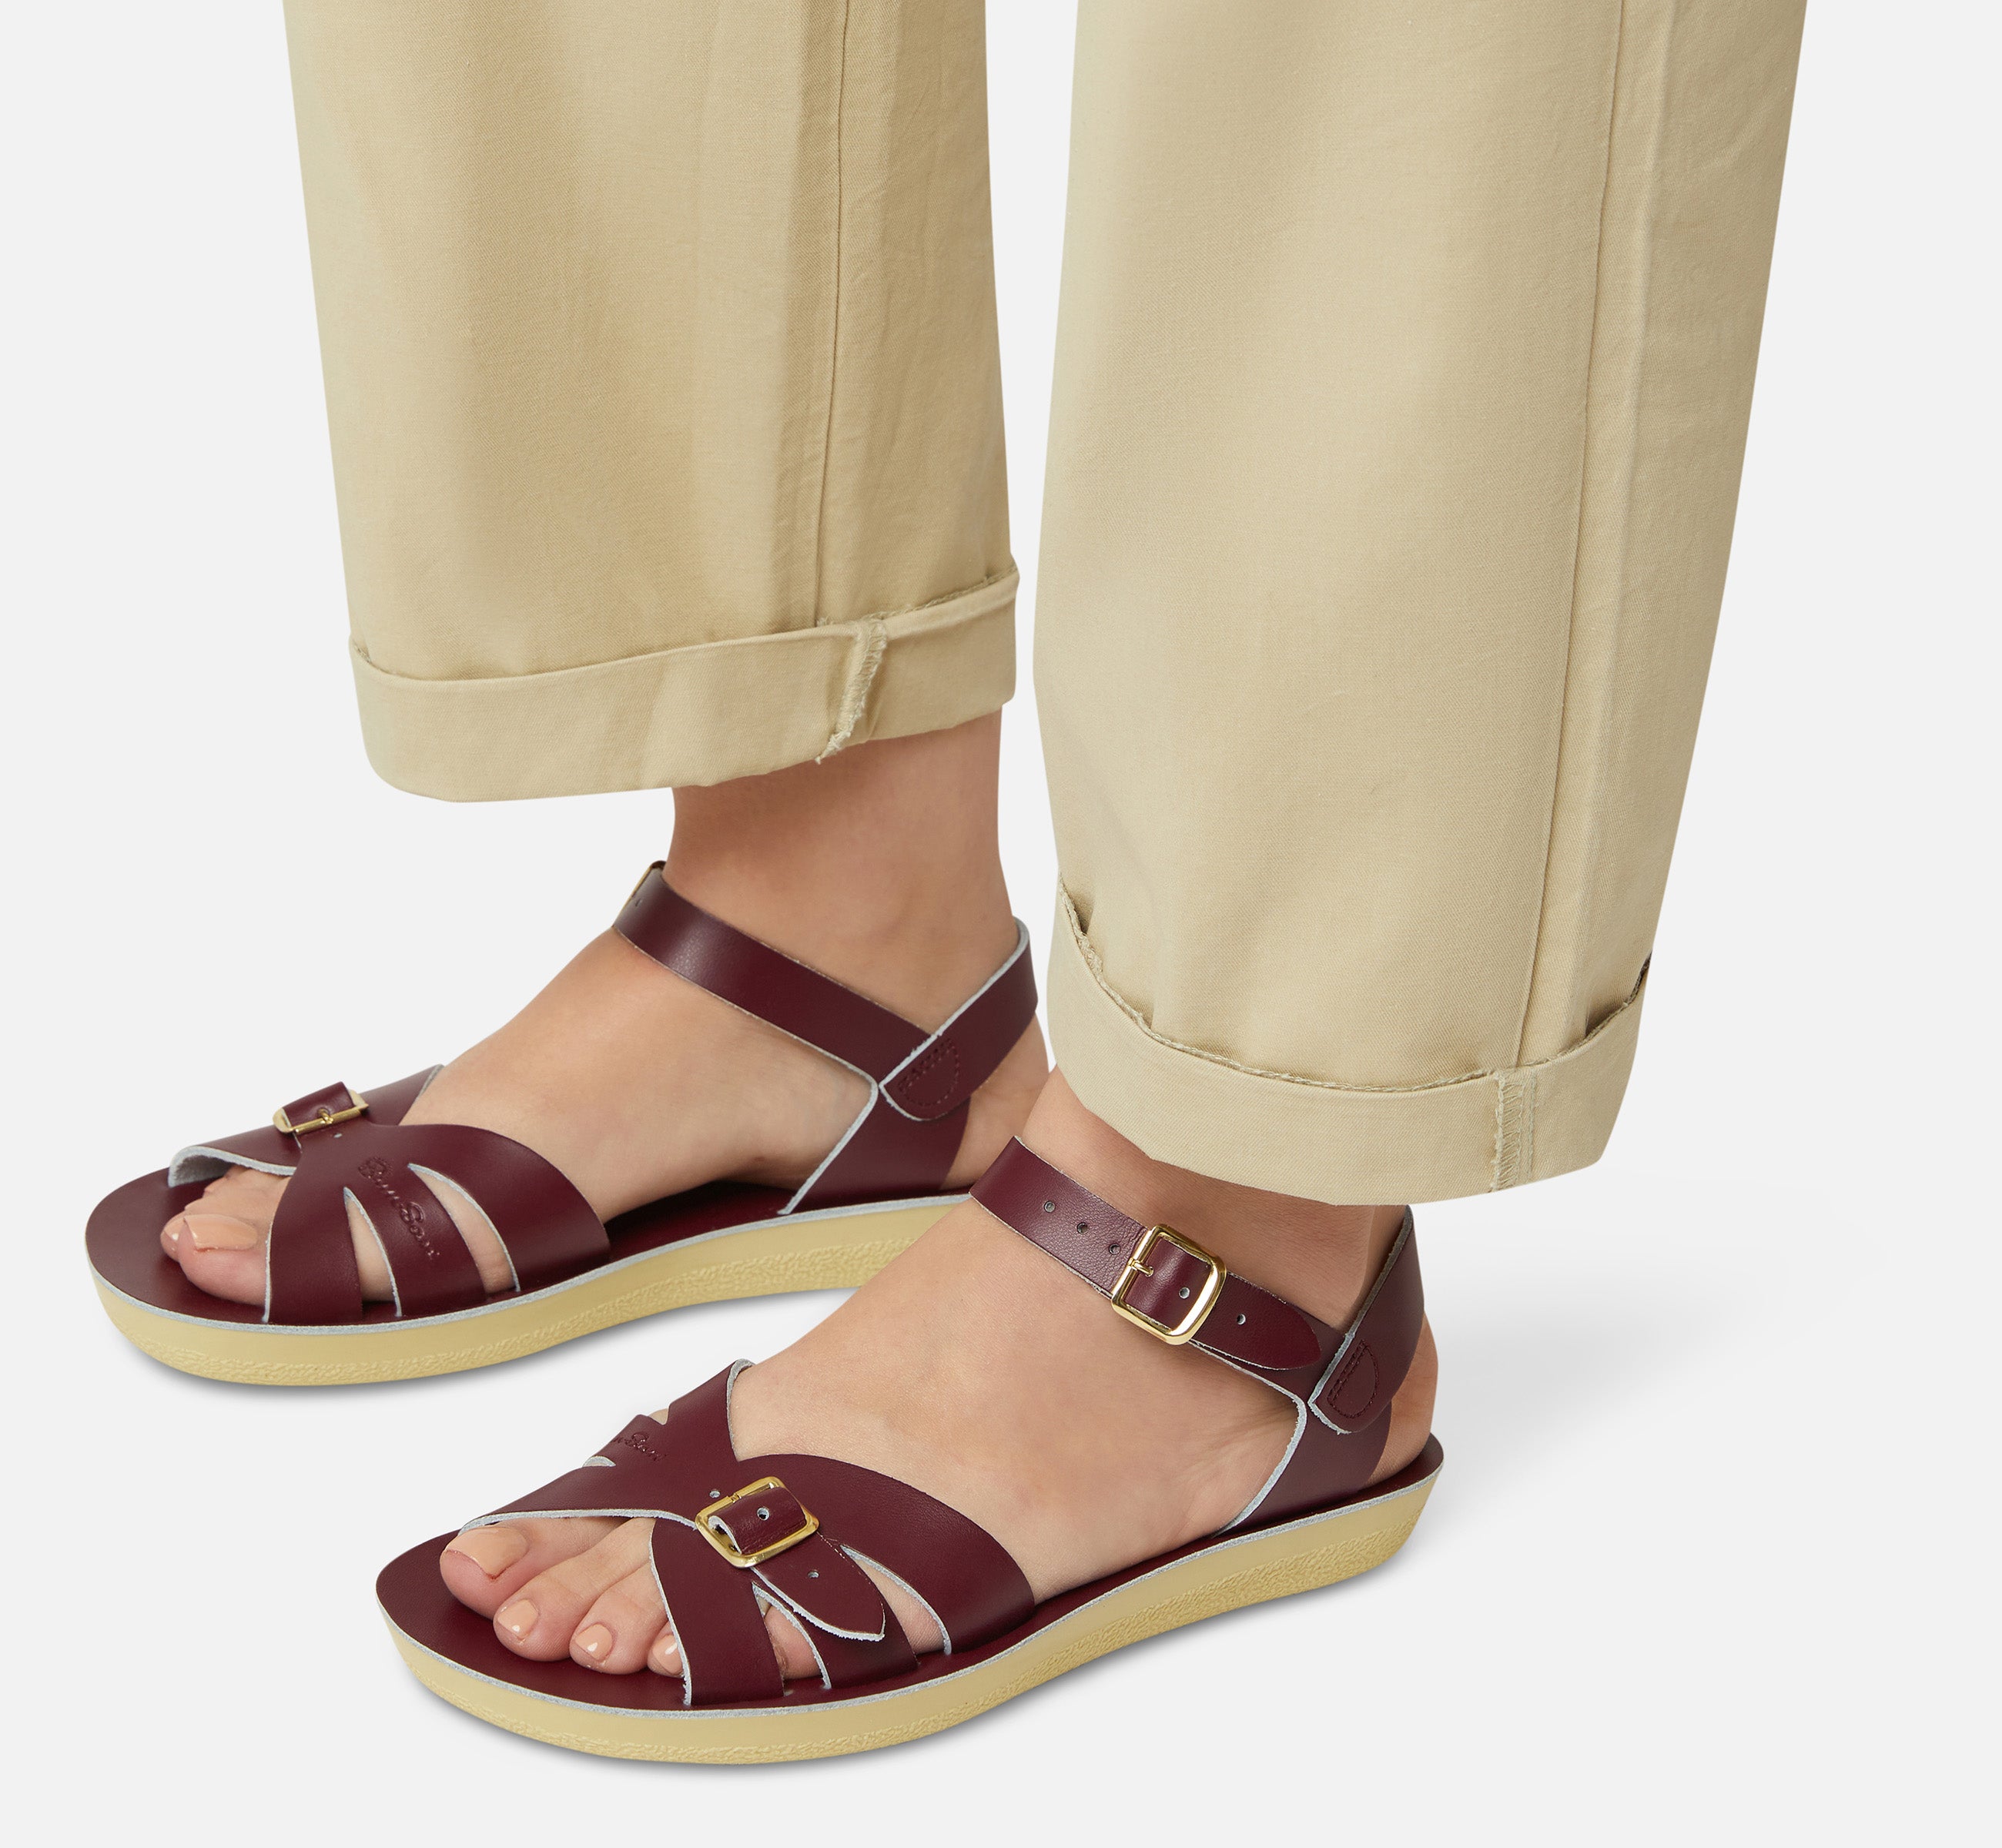 Boardwalk Claret Womens Sandal